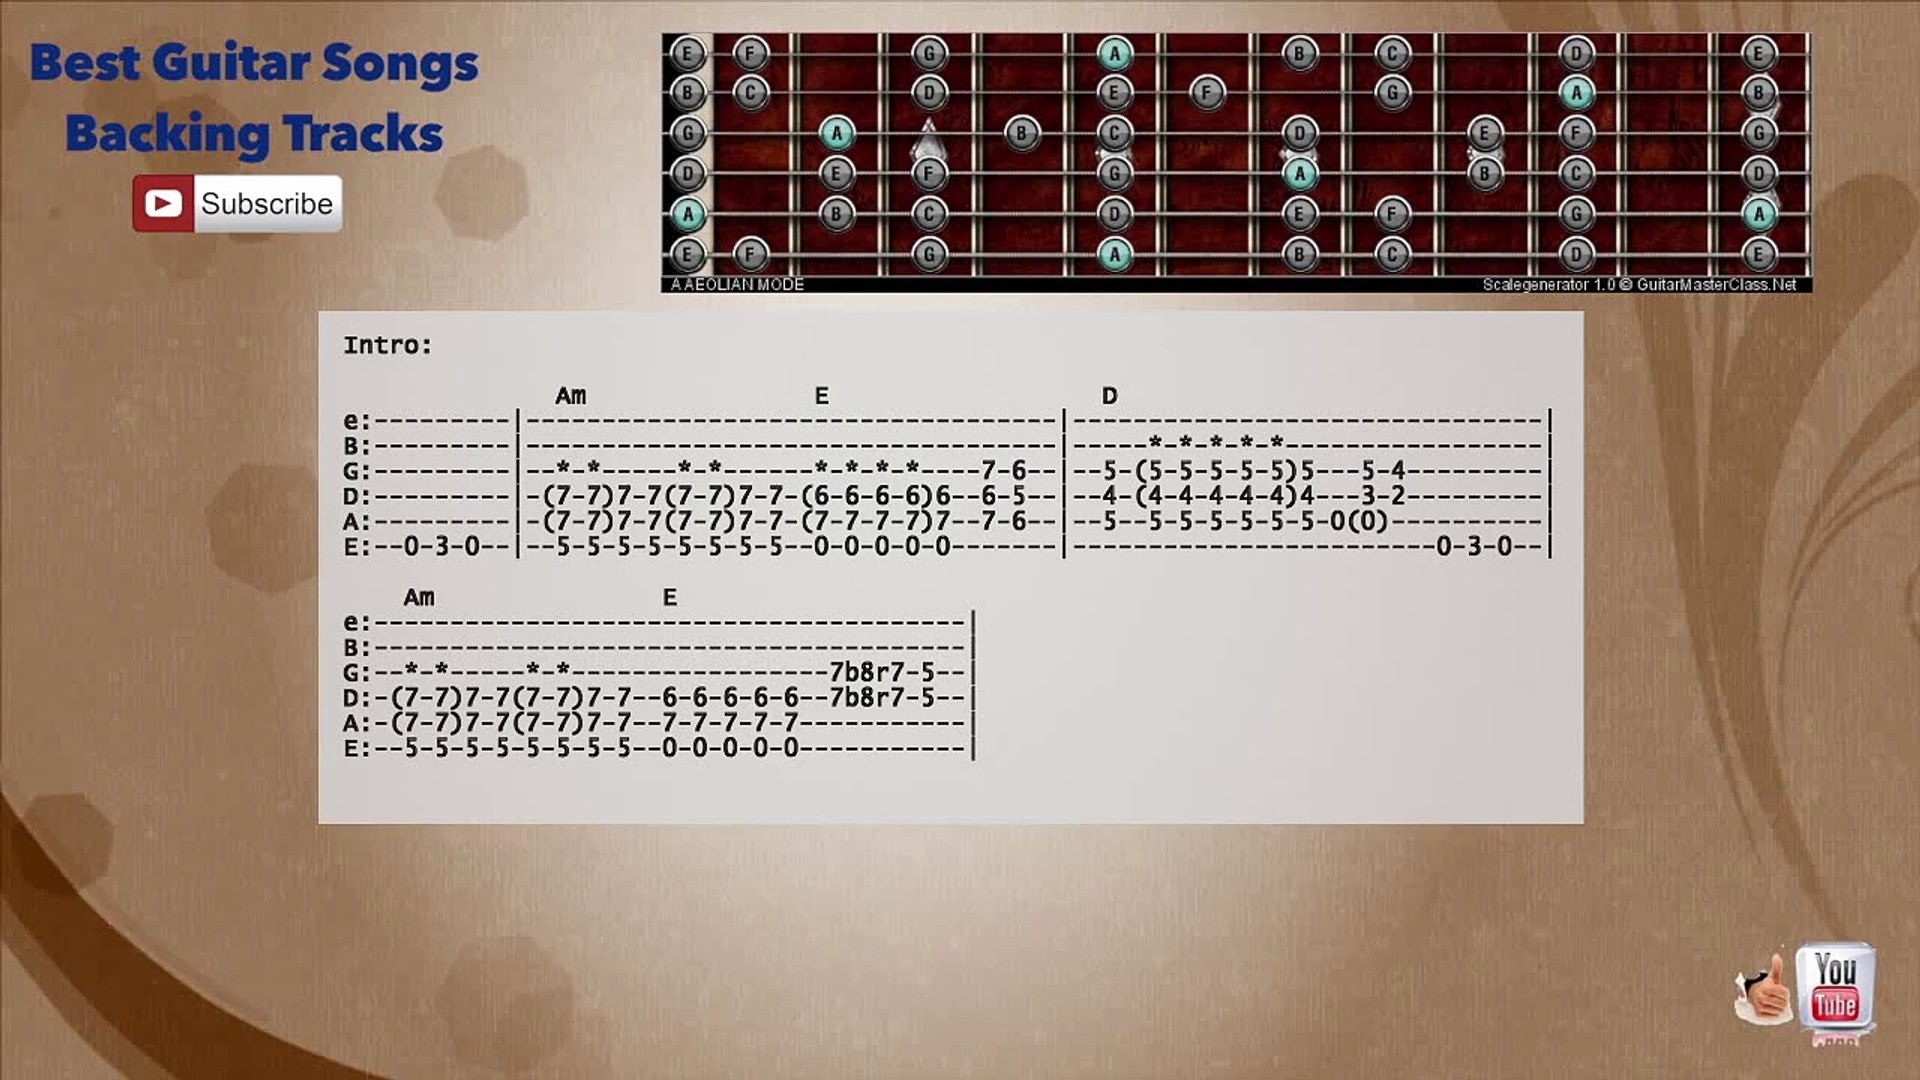 La Flaca - Jarabe de Palo Guitar Backing Track escala, acordes y letra -  Vídeo Dailymotion